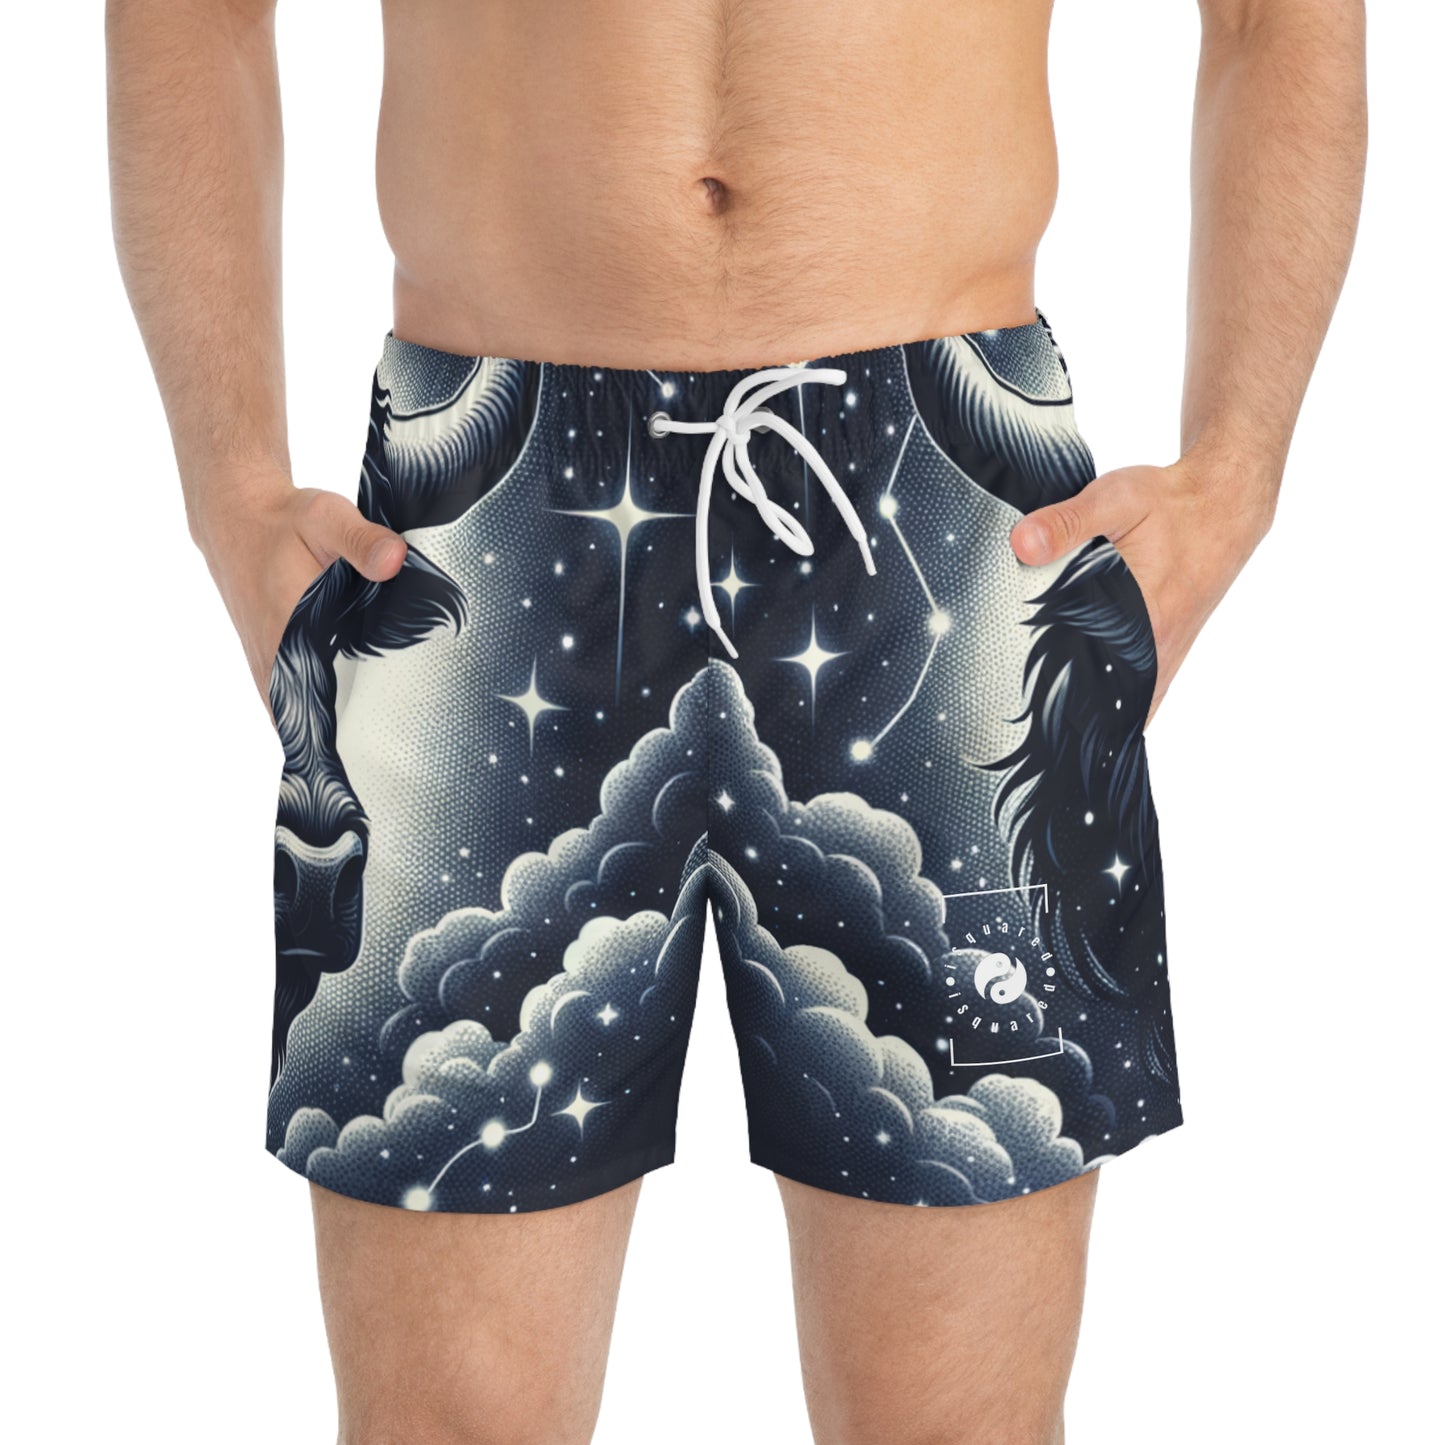 Celestial Taurine Constellation - Swim Trunks for Men